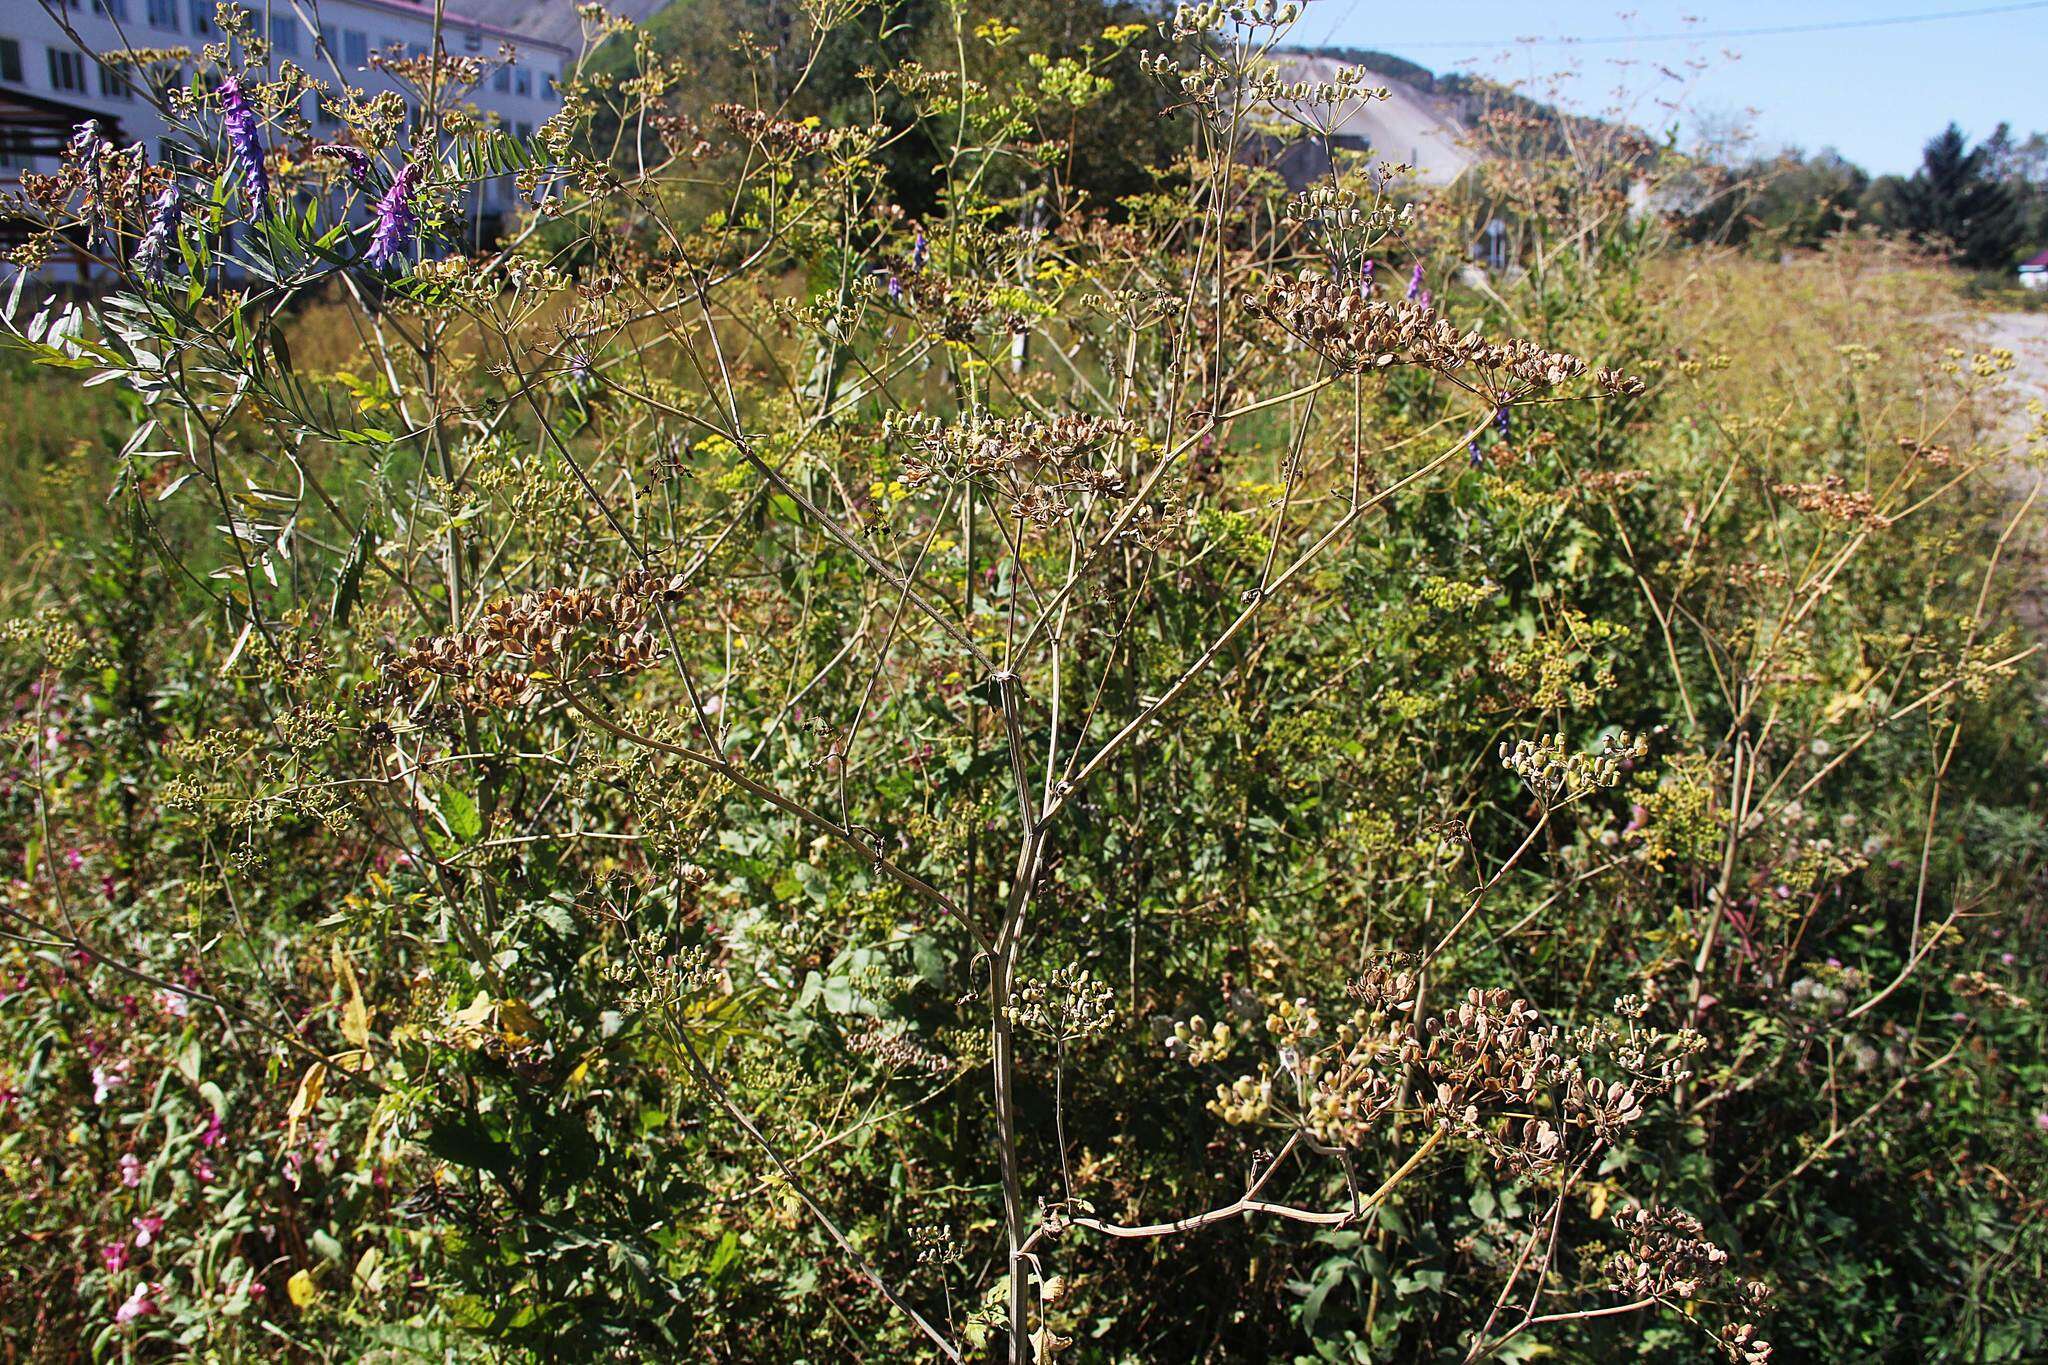 Image of Pastinaca sativa subsp. sylvestris (Mill.) Rouy & Camus